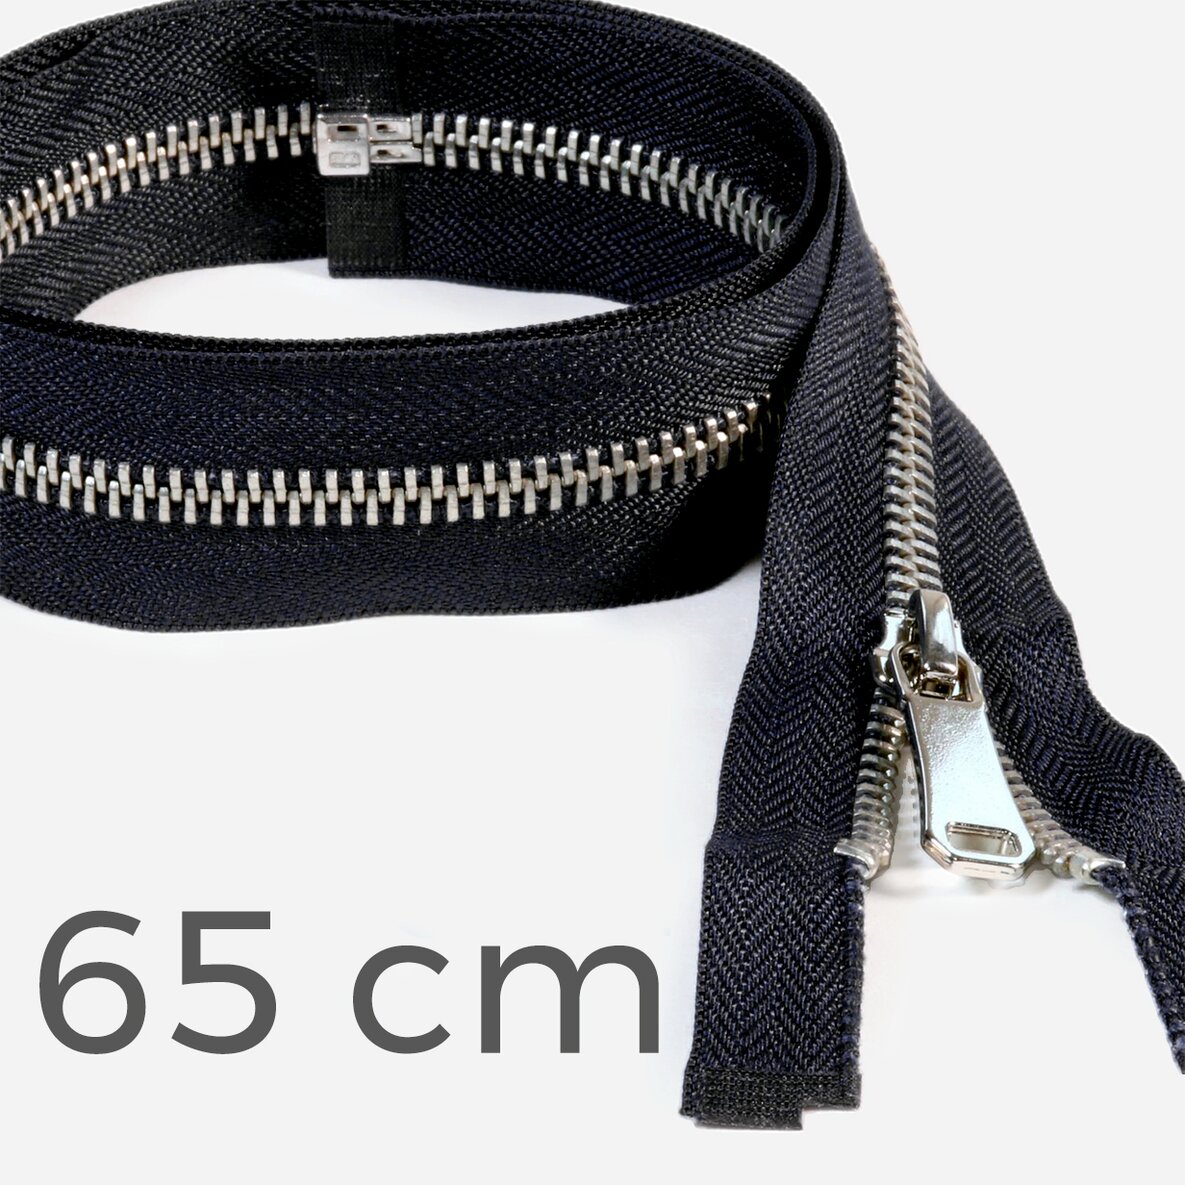 Jacken Reissverschluss Metall teilbar schwarz 65 cm